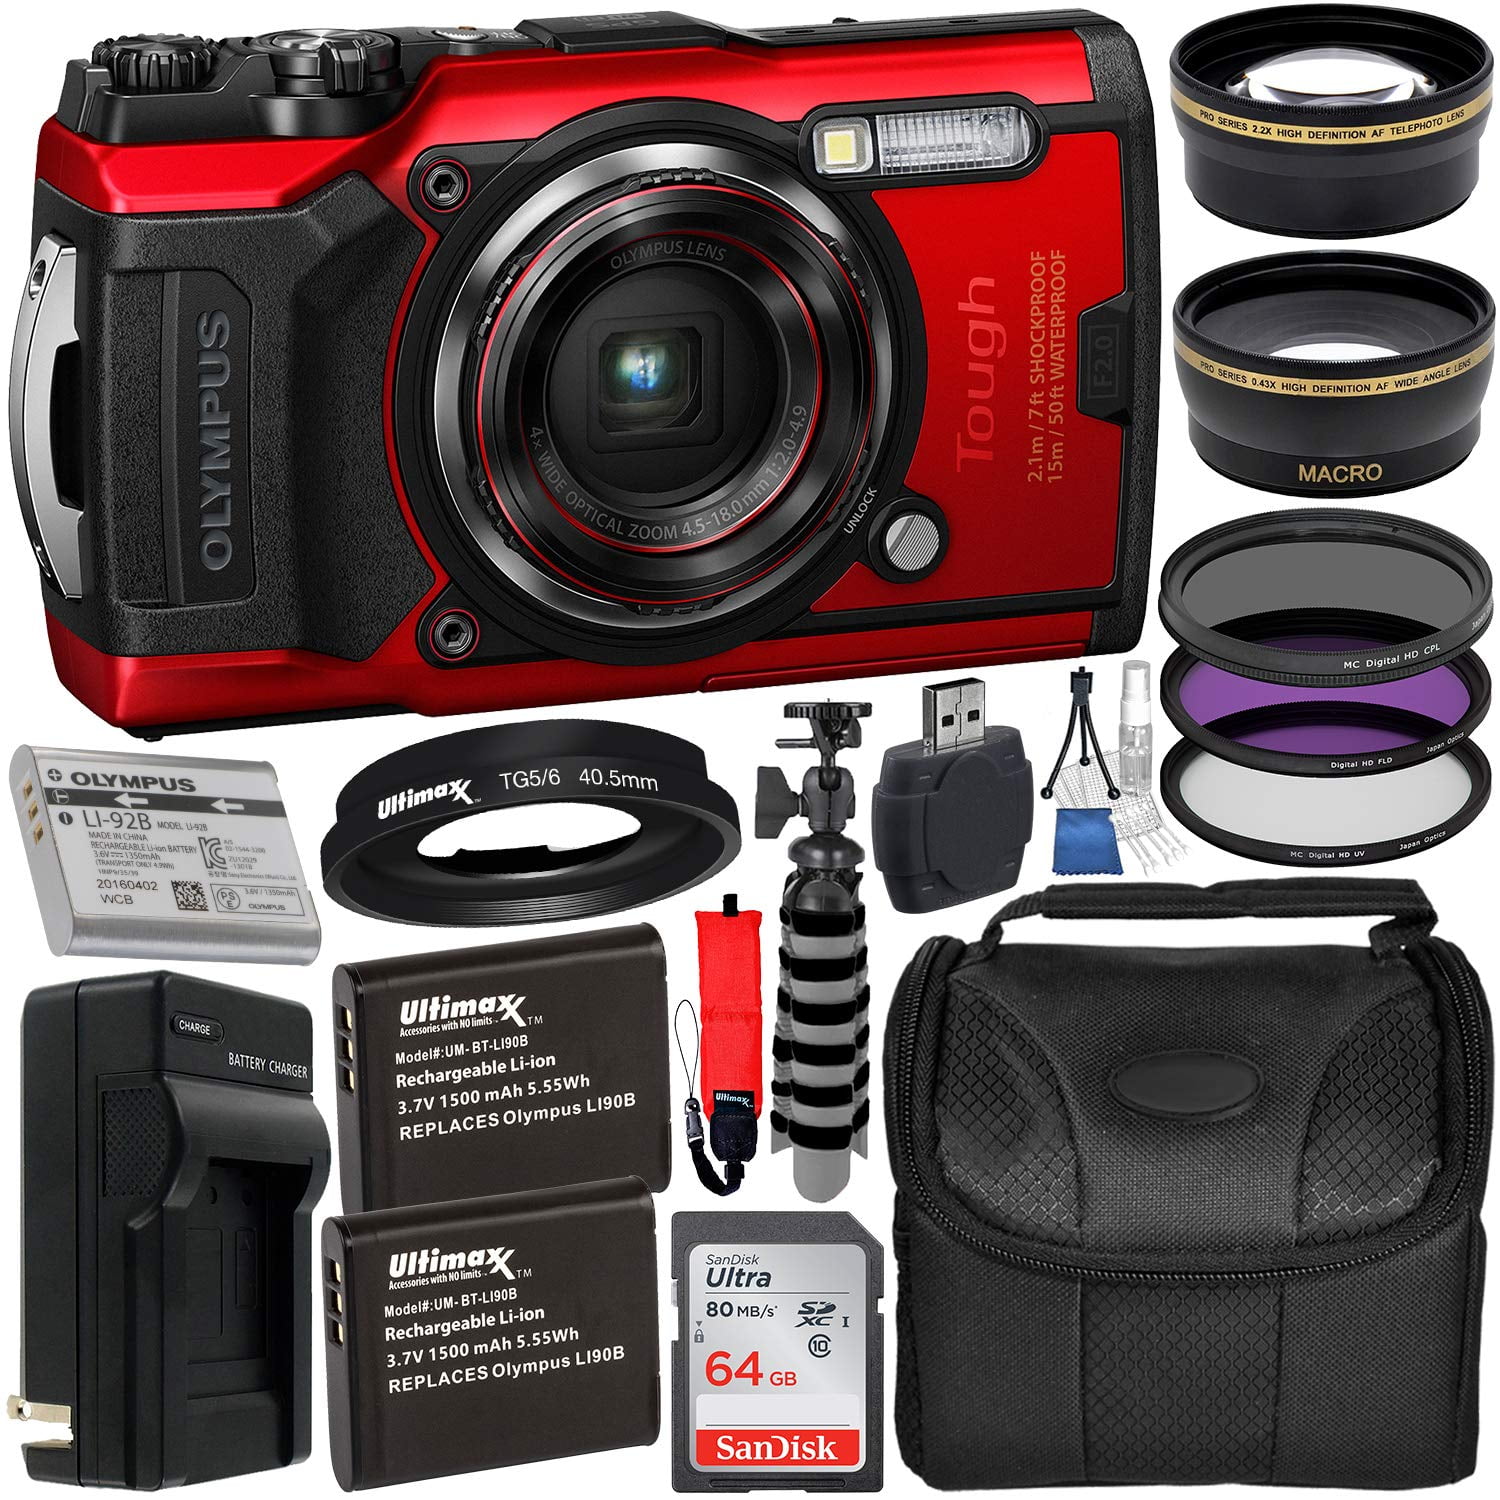 Olympus Tough TG-6 Digital Camera (Red) V104210RU000 + 64GB +